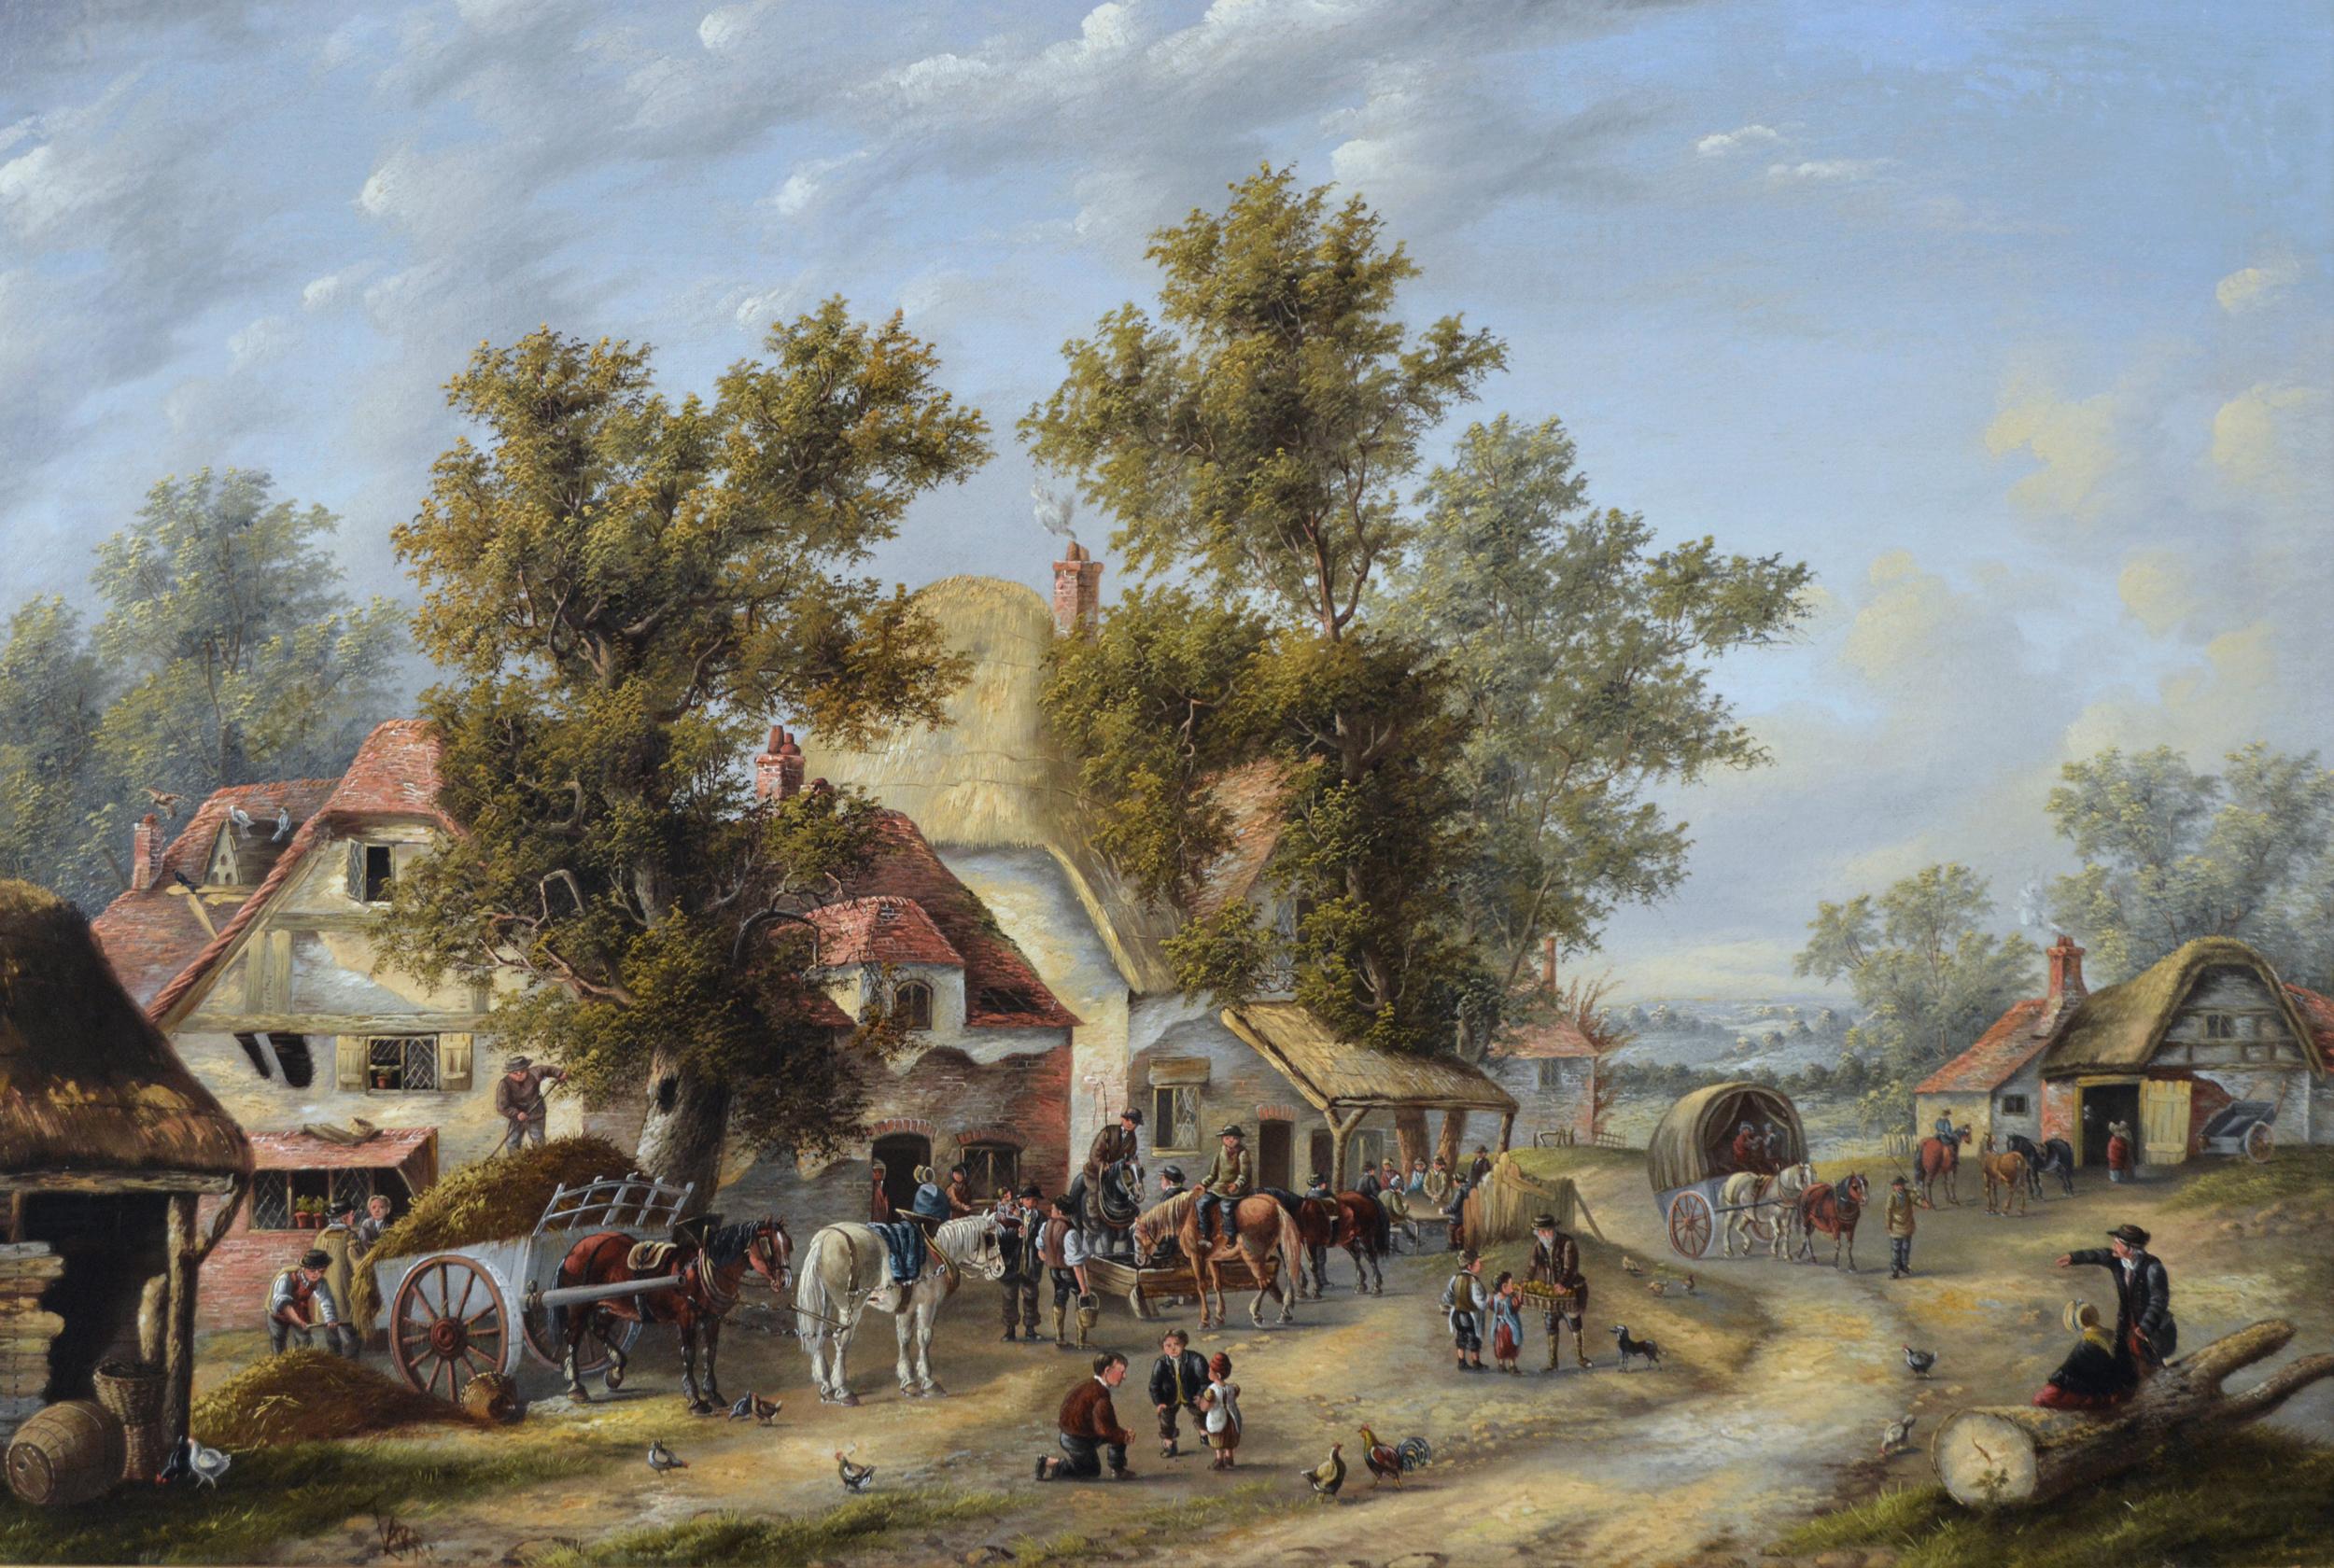 Landschafts-Ölgemälde eines belebten Dorfes aus dem 19. Jahrhundert – Painting von Georgina Lara